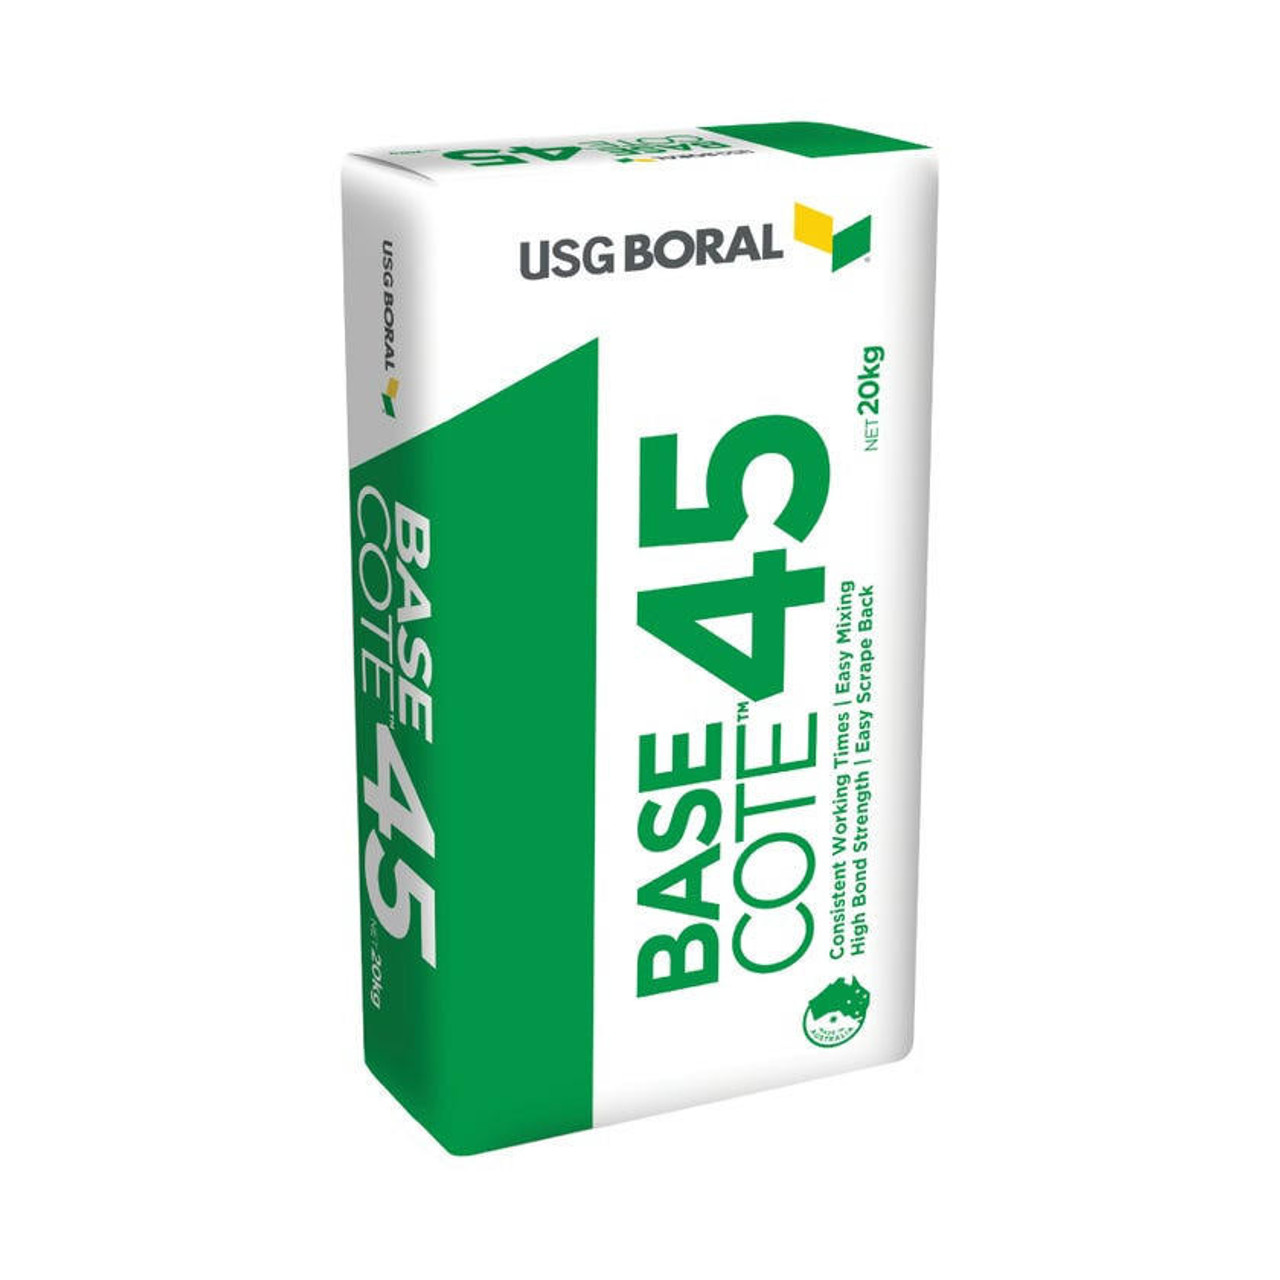 USG Boral BaseCote 45 20Kg